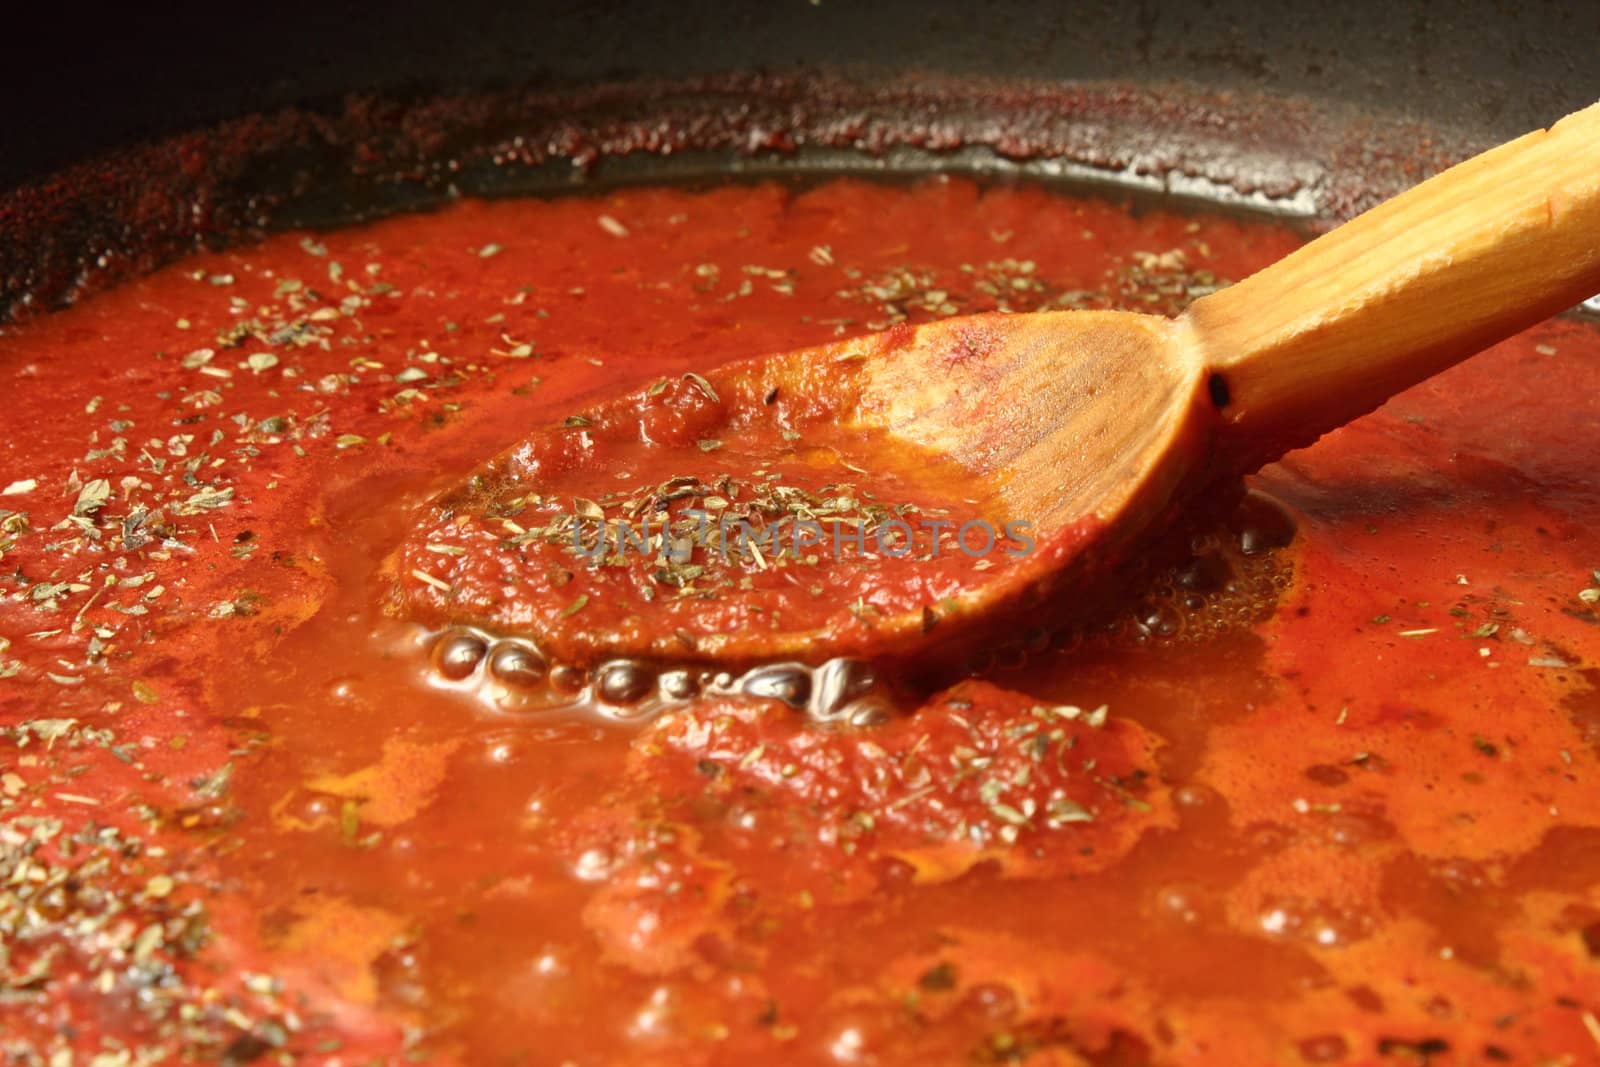 preparing tomato sauce for pizza and spaghetti